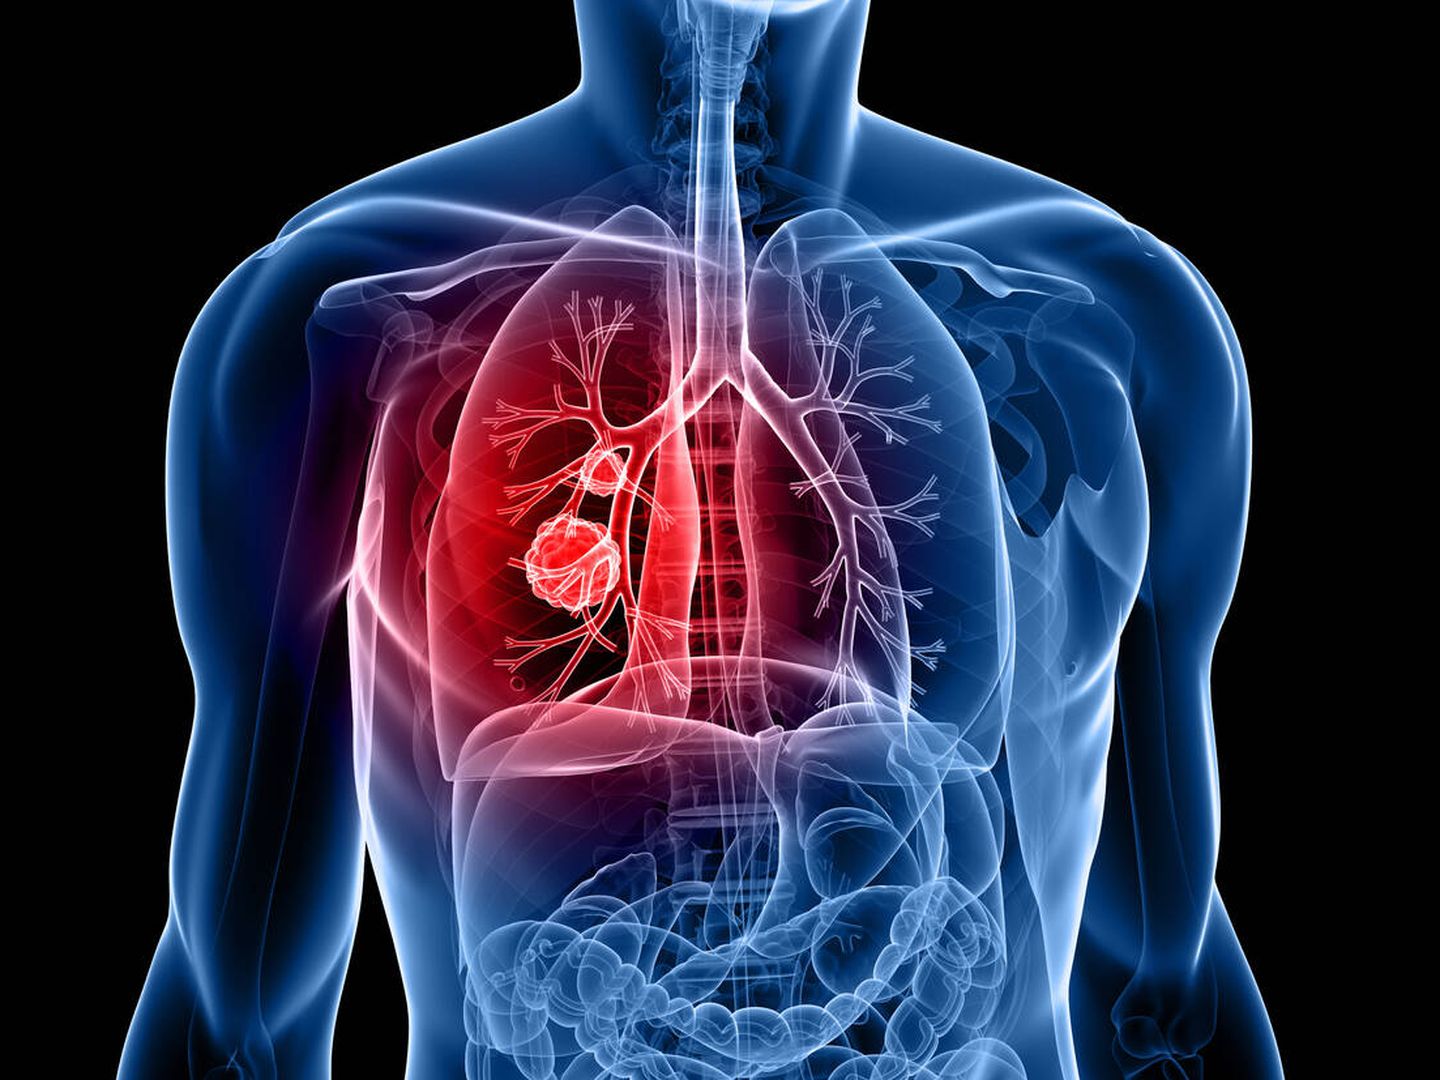 Cuando se encuentra un nódulo pulmonar hay que hacer pruebas más exhaustivas. (iStock)